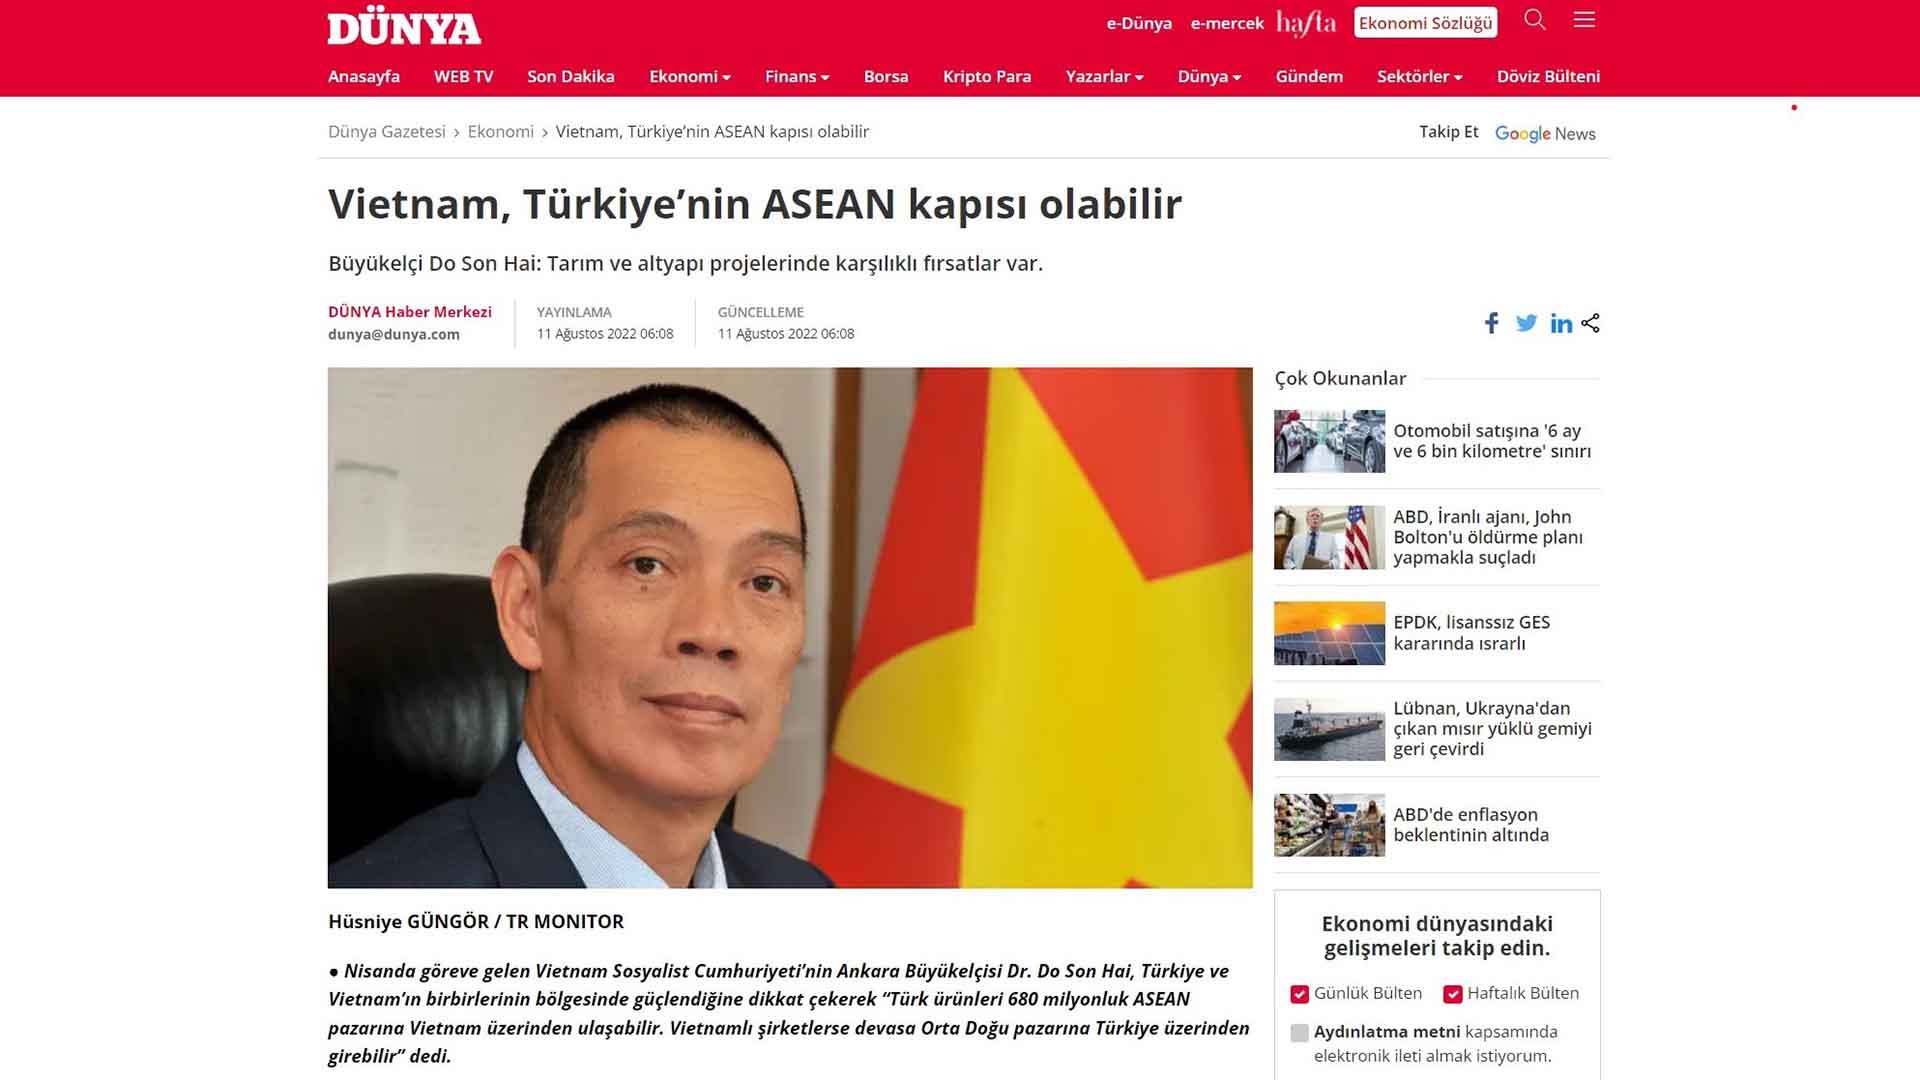 Đại sứ Đỗ Sơn Hải trả lời phỏng vấn thời báo kinh tế Dunya News.